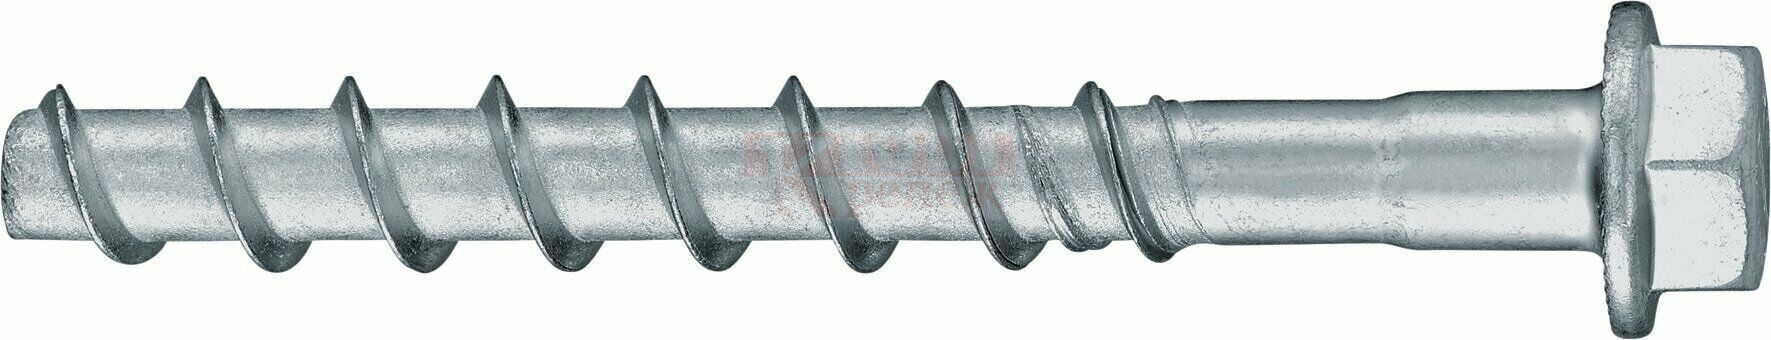 HUS2-H 8/10 8x130 Анкер-шуруп HILTI для бетона оц. сталь, 10x130 75/55 мм